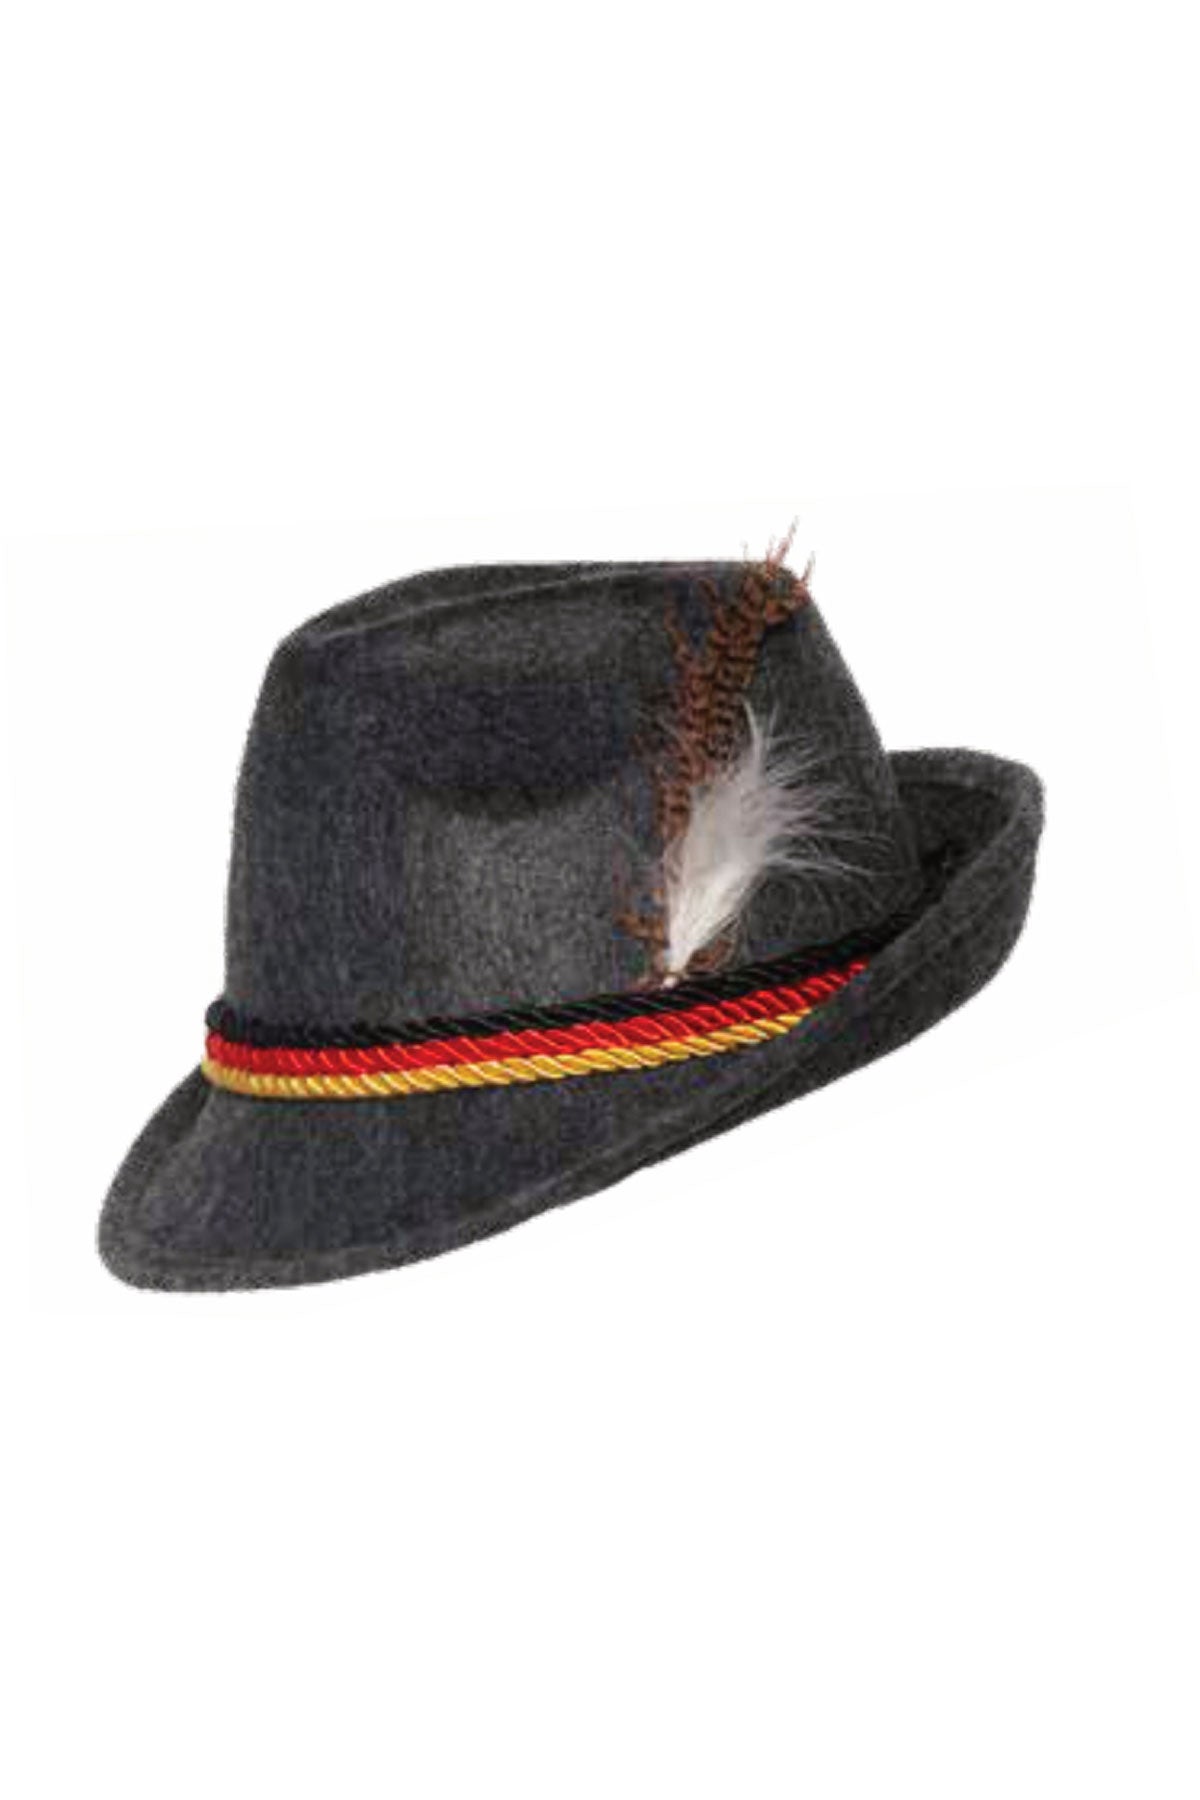 Bavarian Hat Underwraps  30582